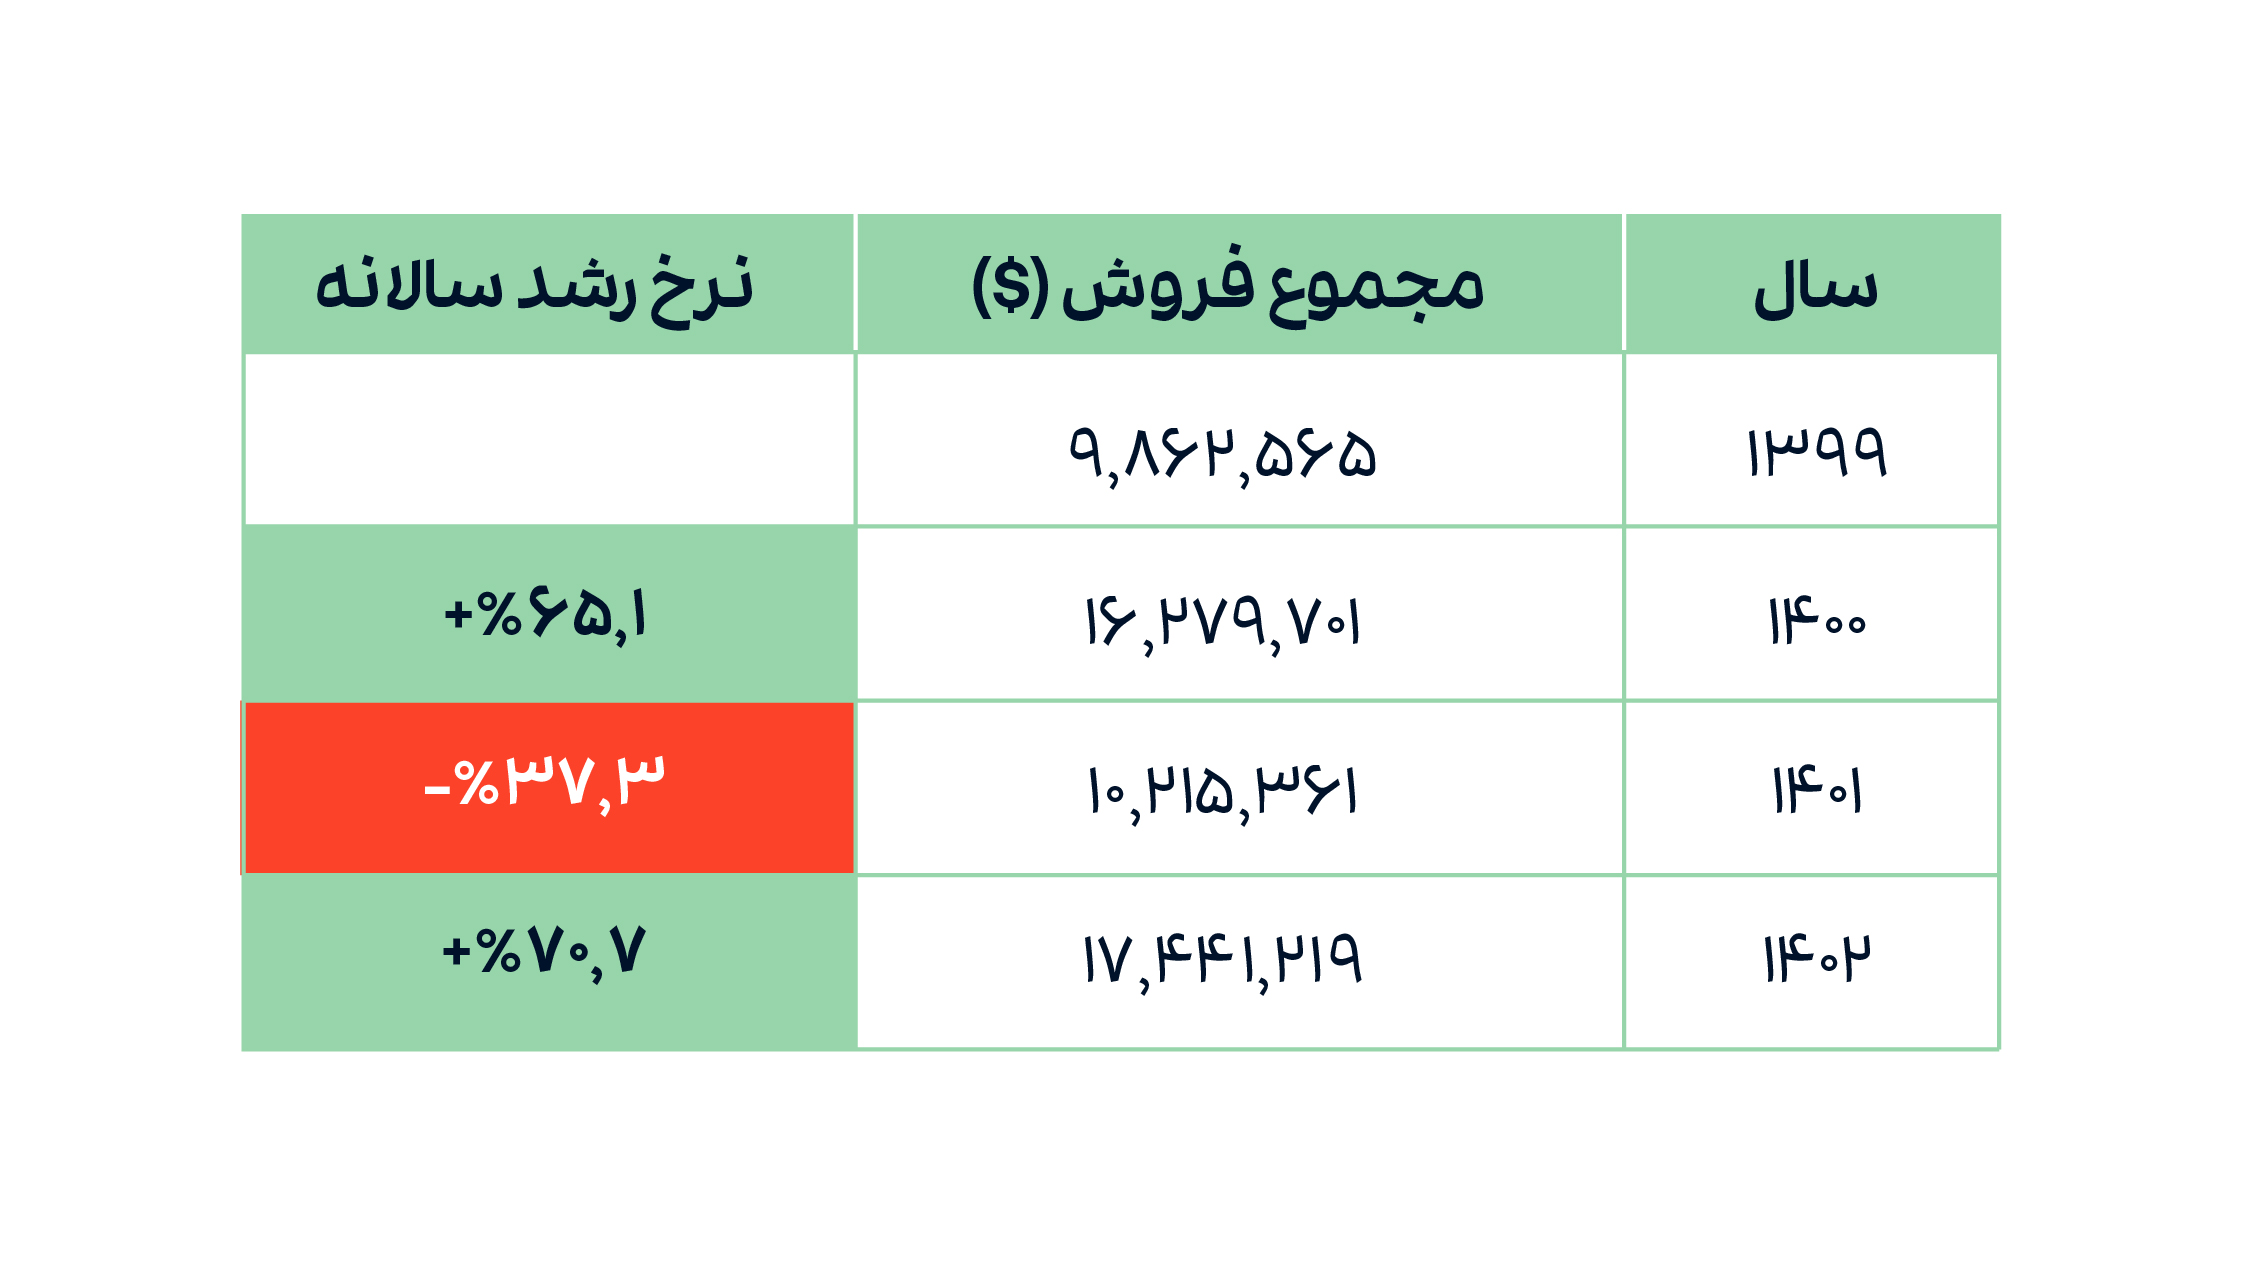 جدول 1. مجموع فروش دلاری بازار هنر ایران و نرخ رشد سالانه (1399-1402).